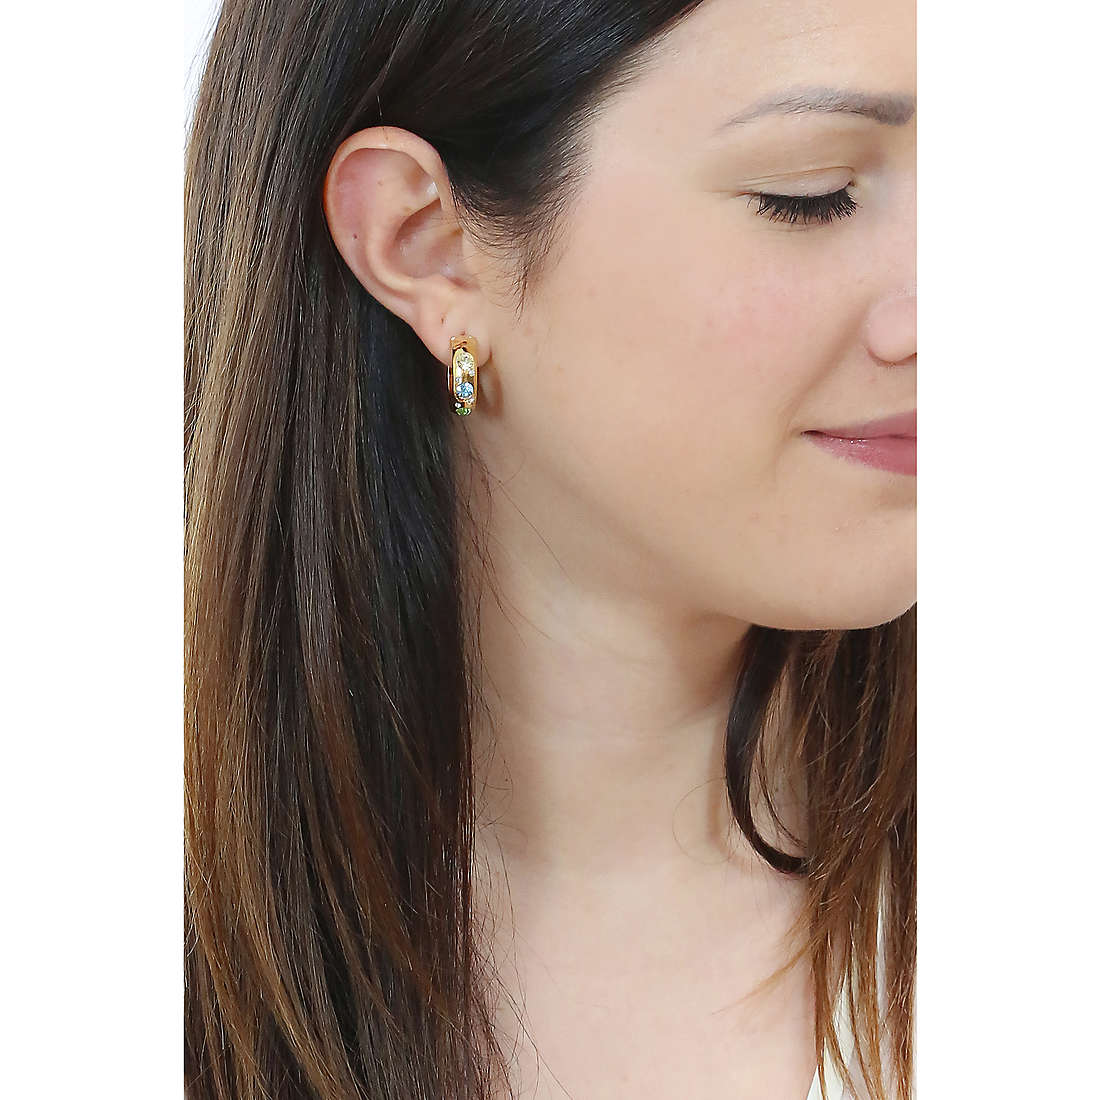 Morellato earrings Poetica woman SAUZ02 wearing